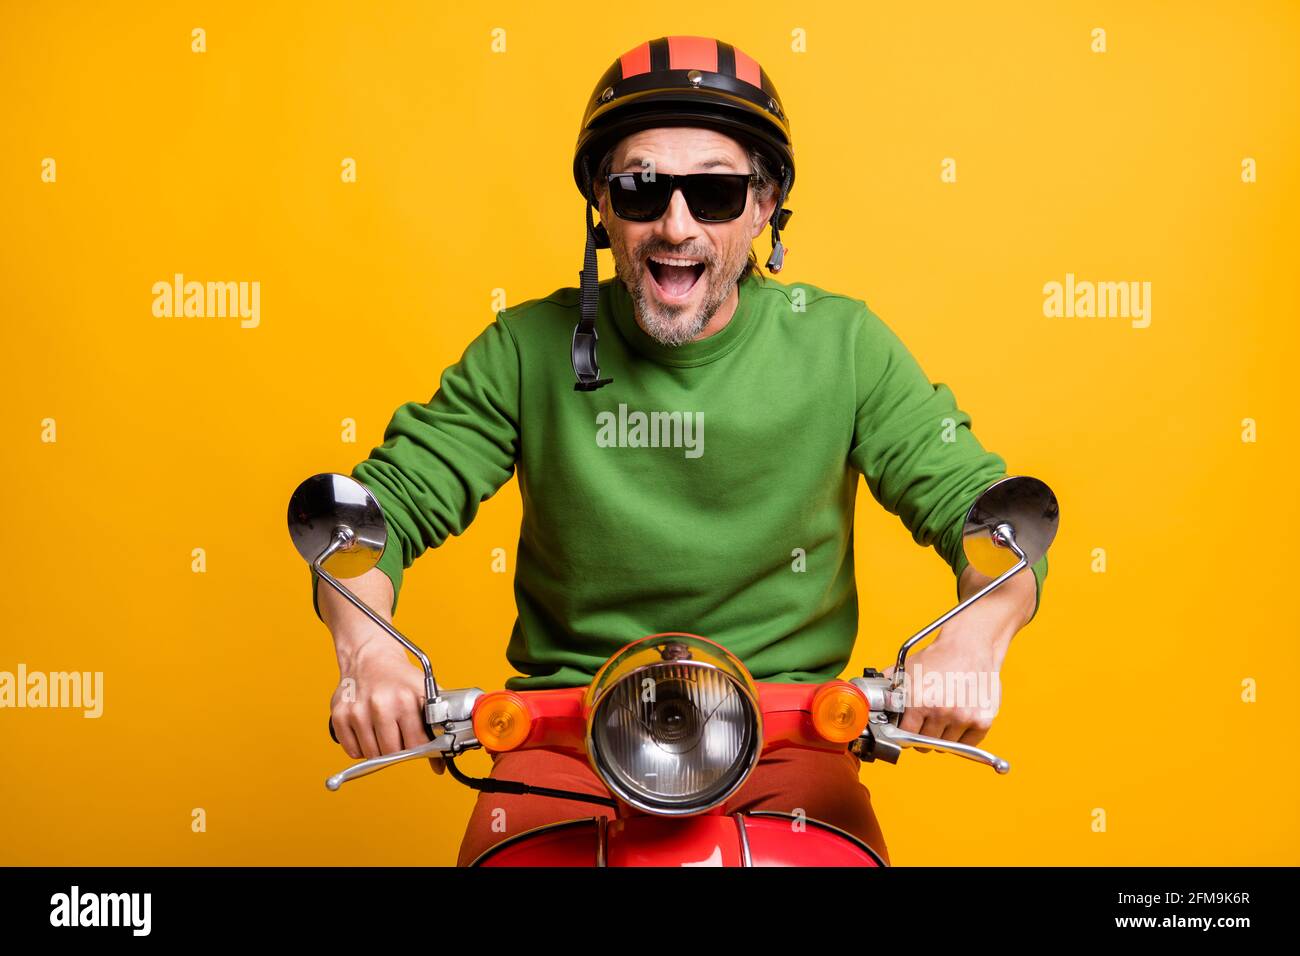 Foto von stauned lustigen Kerl Fahrt Moped tragen Helm Brille Grüner  Pullover isolierter gelber Hintergrund Stockfotografie - Alamy